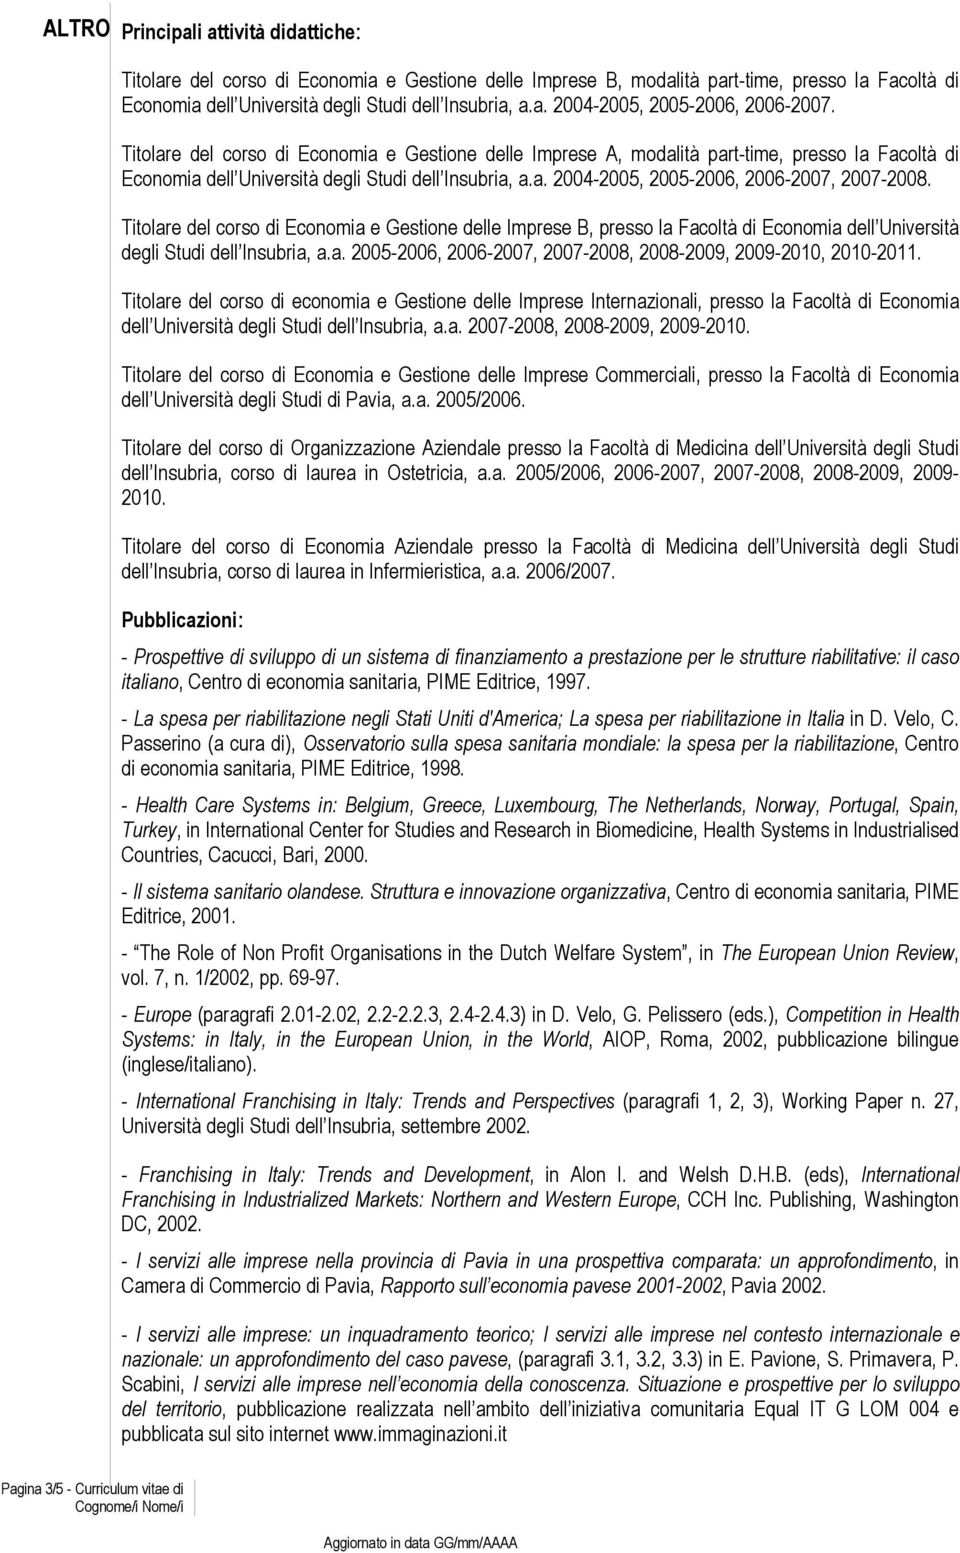 Titolare del corso di Economia e Gestione delle Imprese B, presso la Facoltà di Economia dell Università degli Studi dell Insubria, a.a. 2005-2006, 2006-2007, 2007-2008, 2008-2009, 2009-2010, 2010-2011.